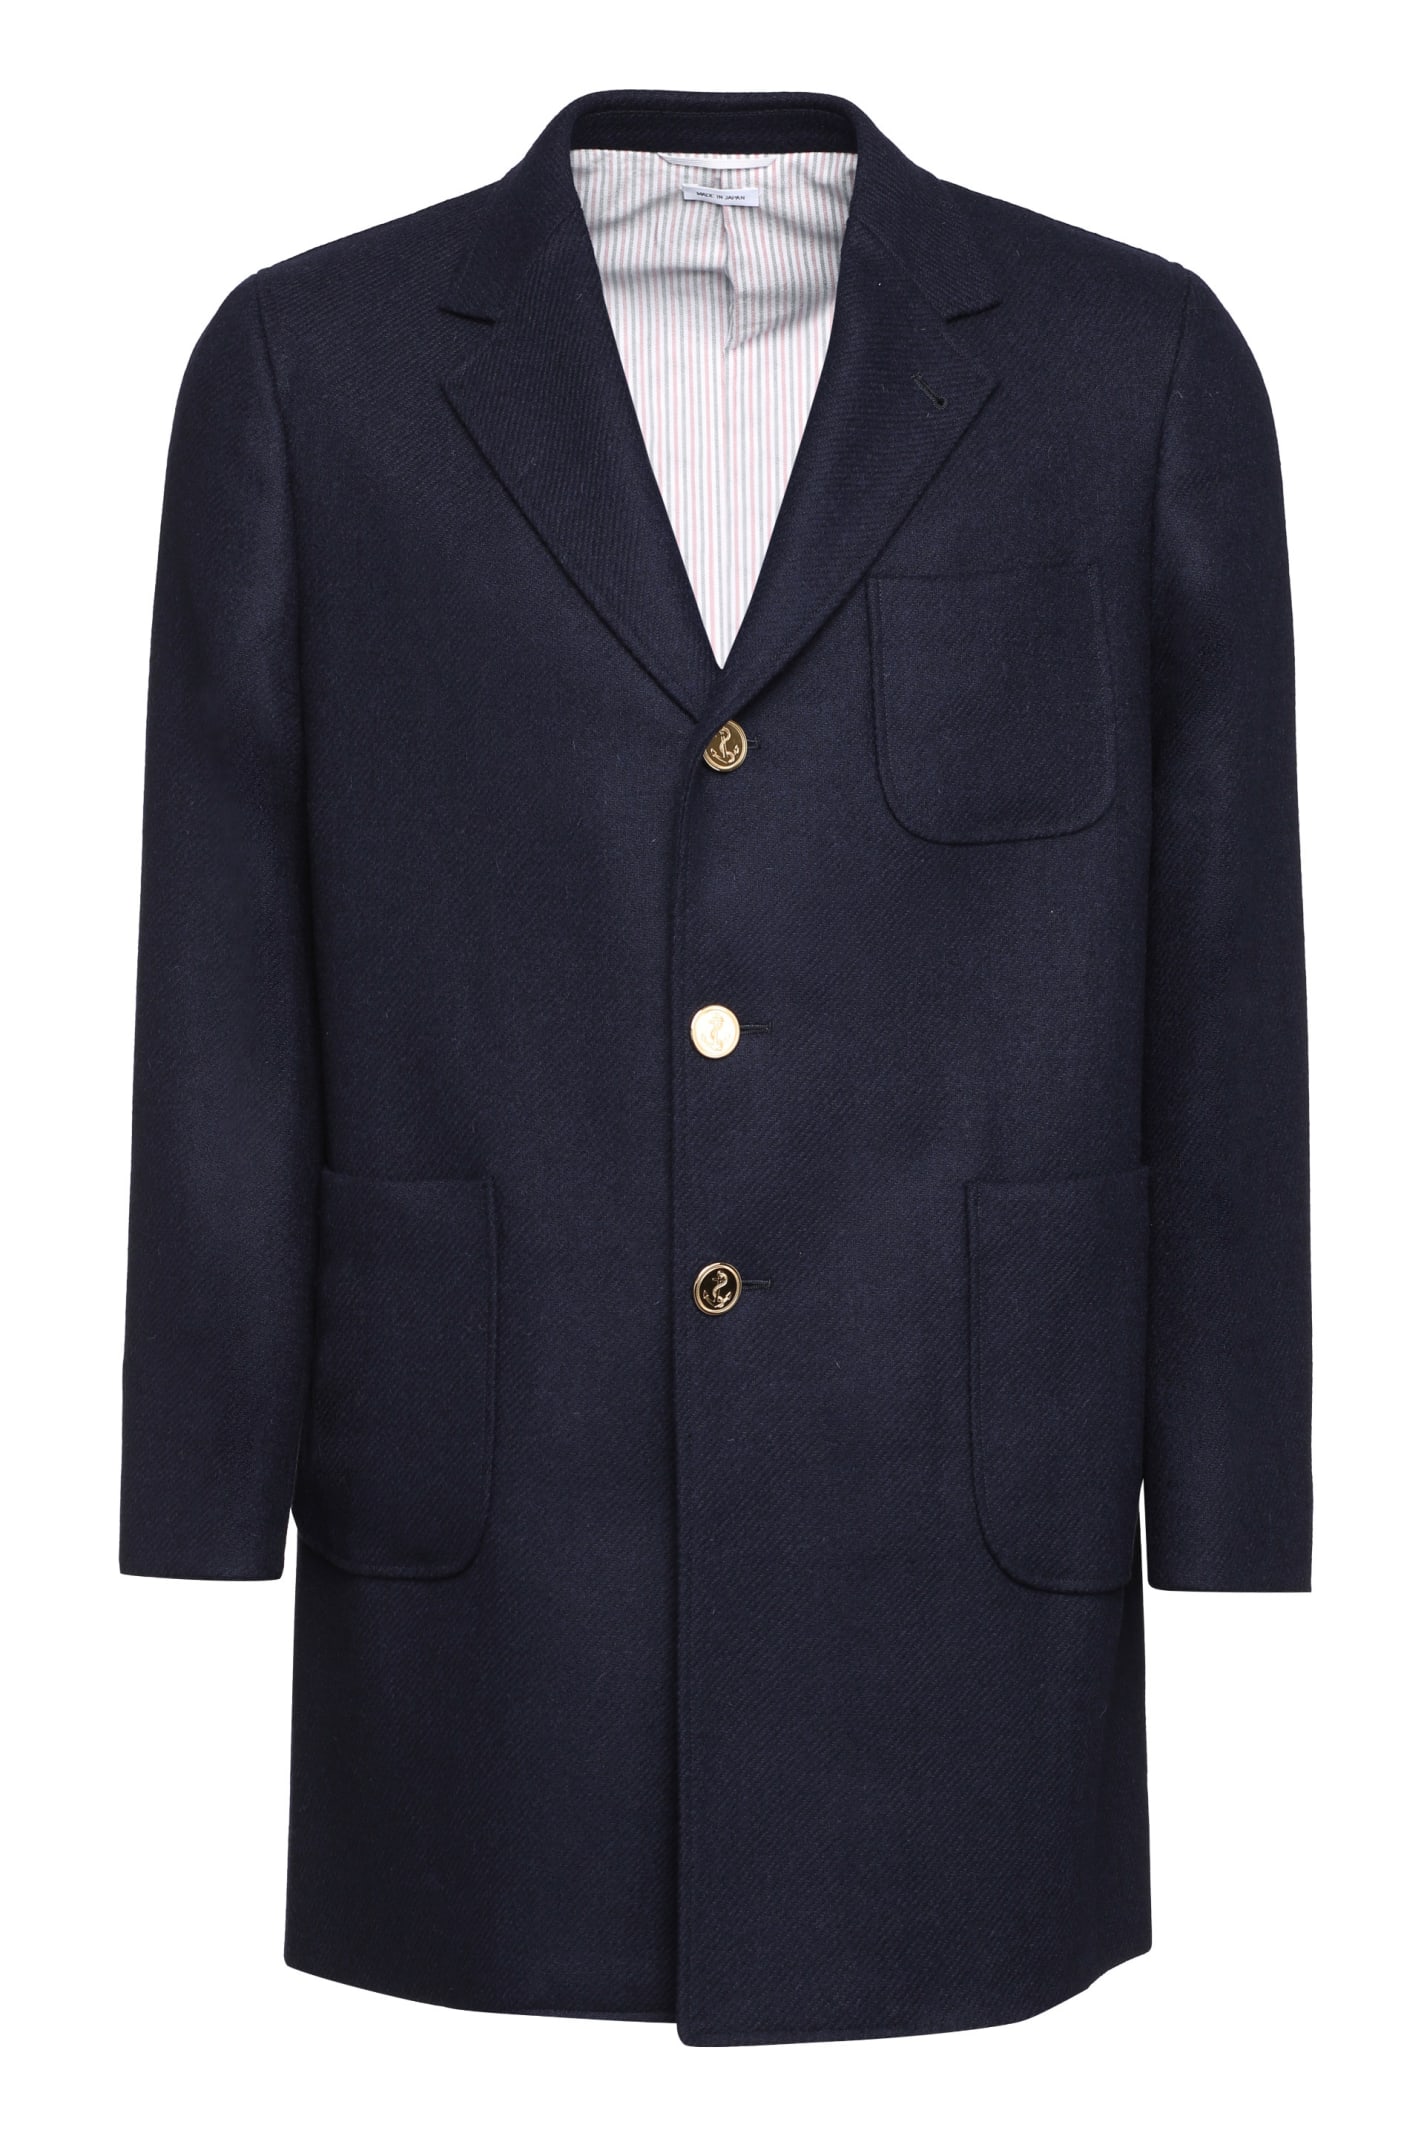 Thom Browne Wool Coat In Blue